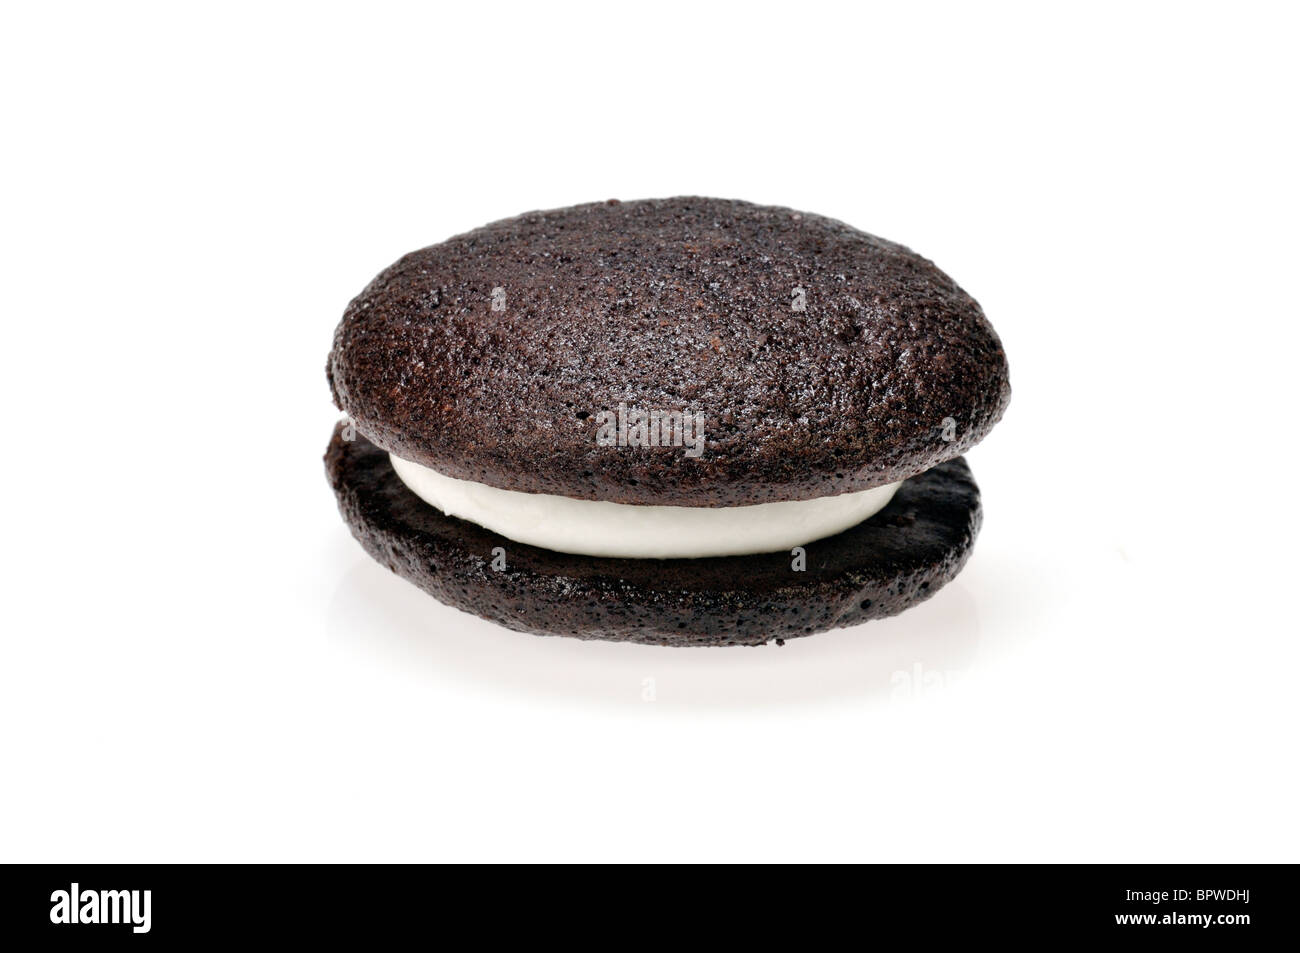 Single whoopie Torte Vanillecreme gefüllte zwischen 2 Schokolade Kuchen Gebäck auf weißem Hintergrund, Ausschnitt. Stockfoto